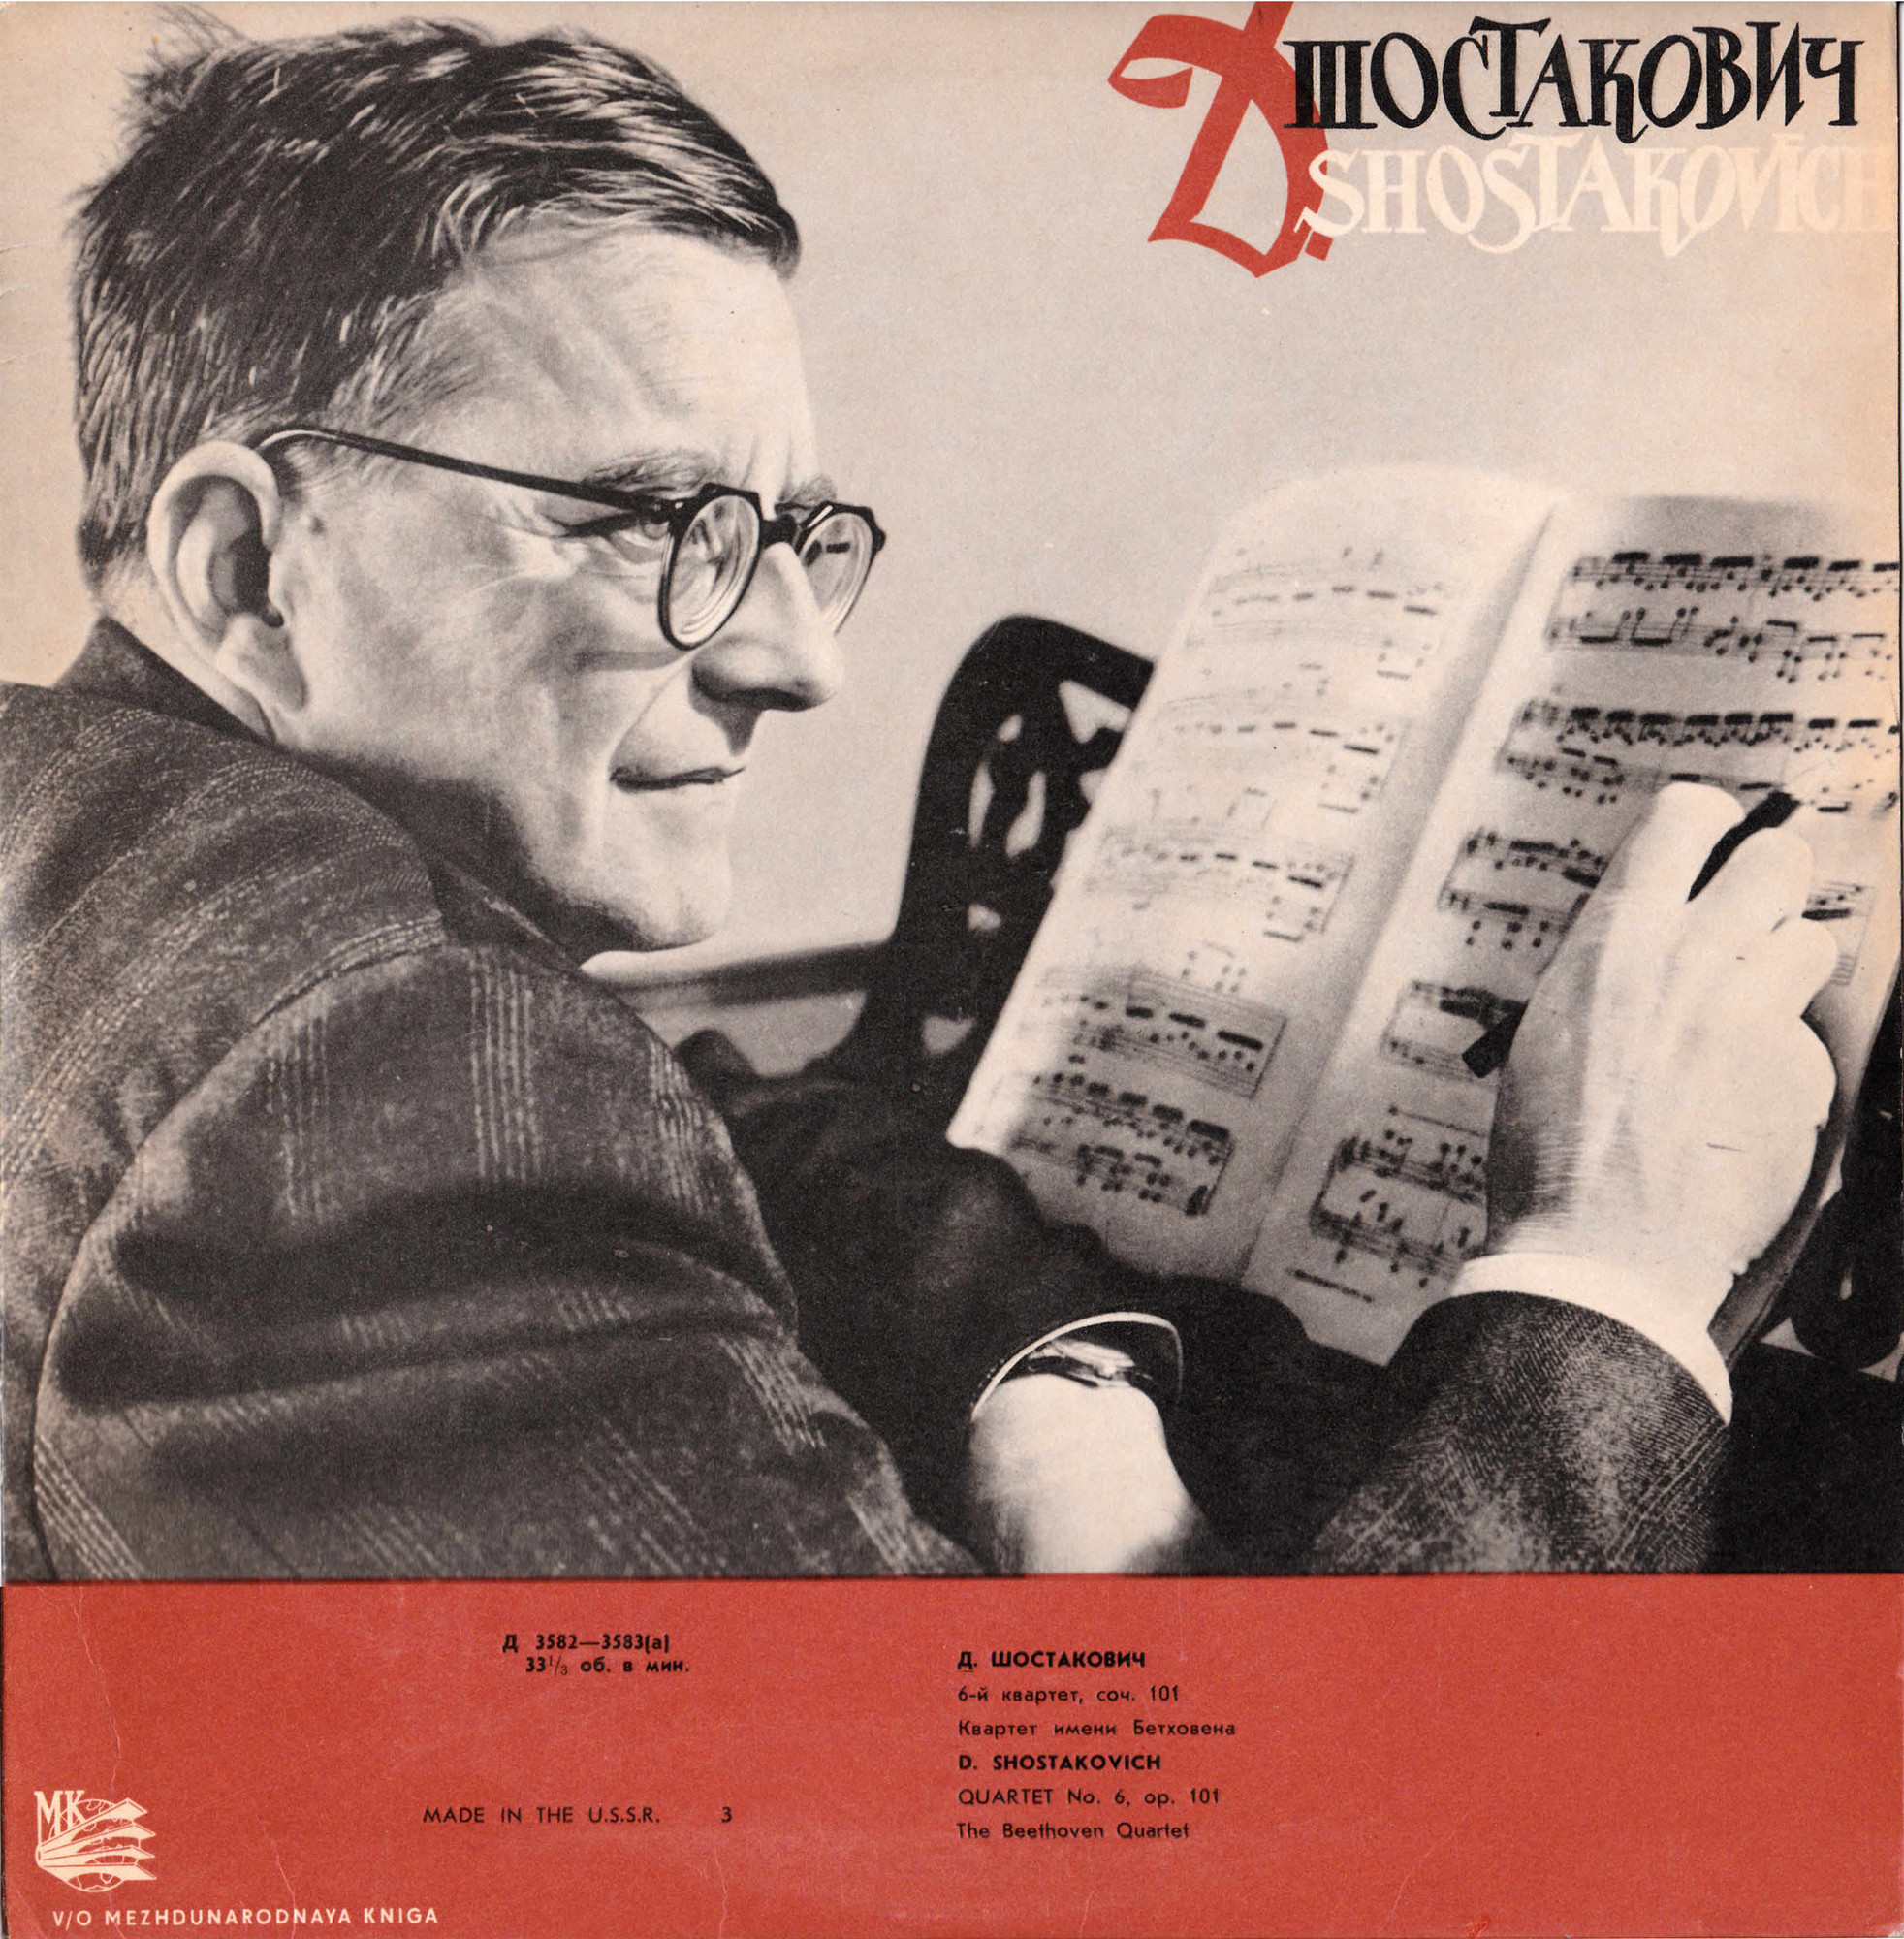 Д. Шостакович: Квартет № 6 (Квартет им. Бетховена)